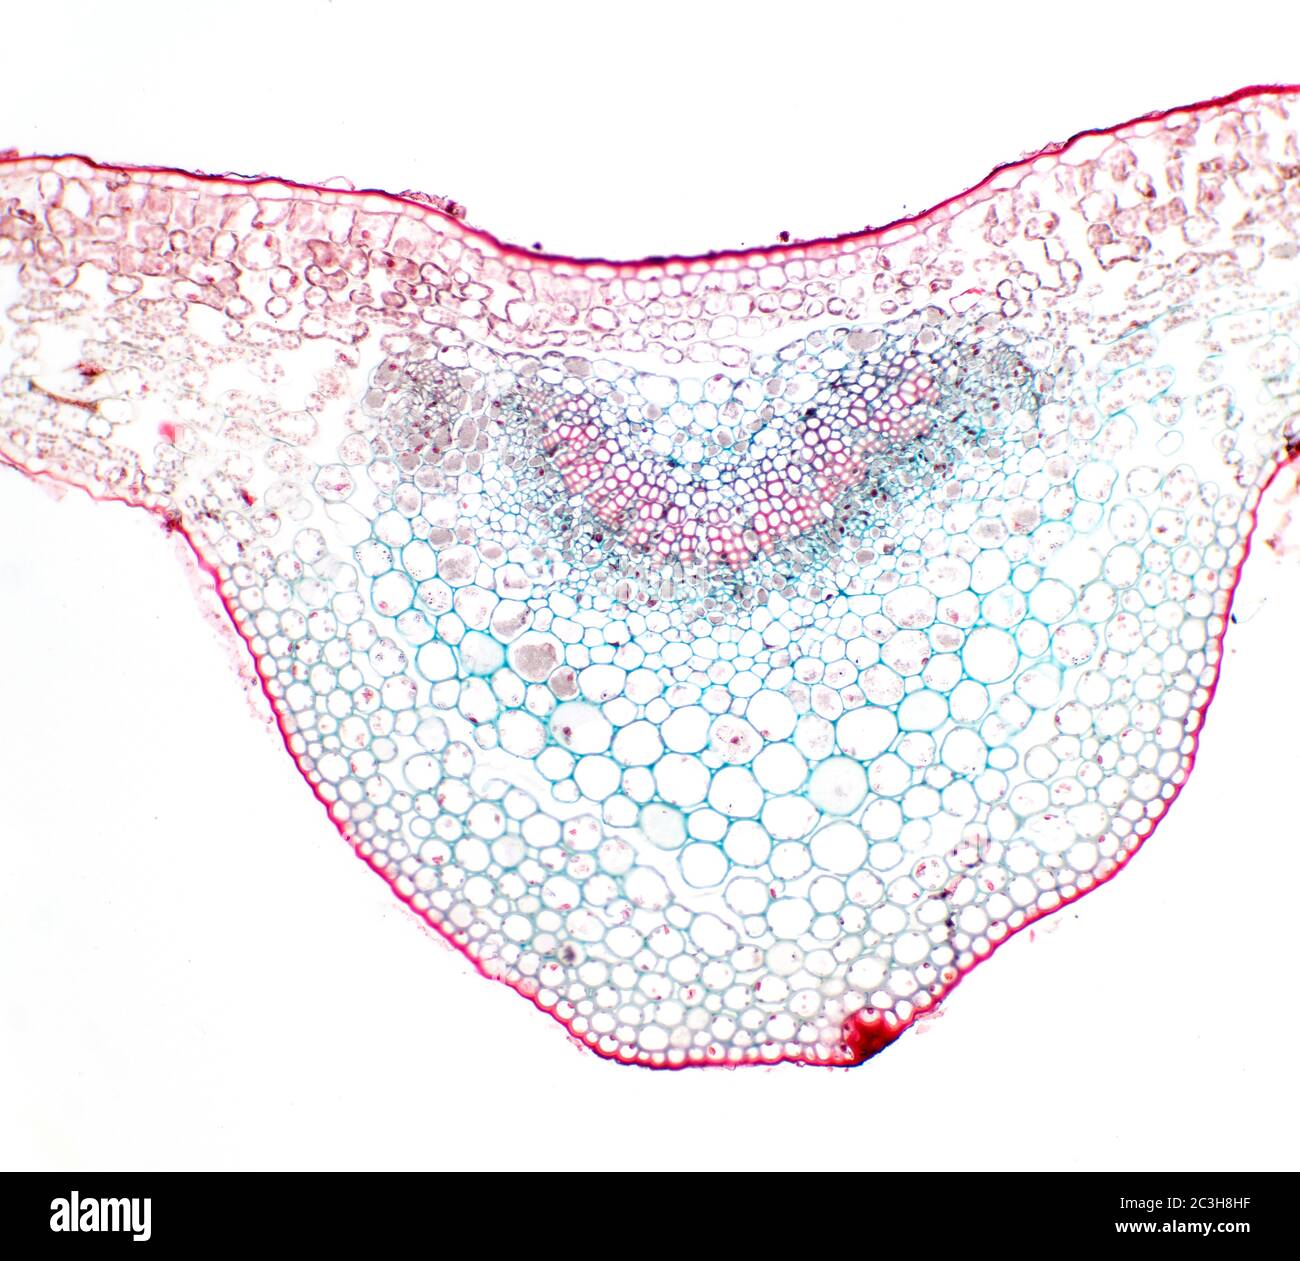 Sección transversal de la hoja Prunus, vista del microscopio Foto de stock